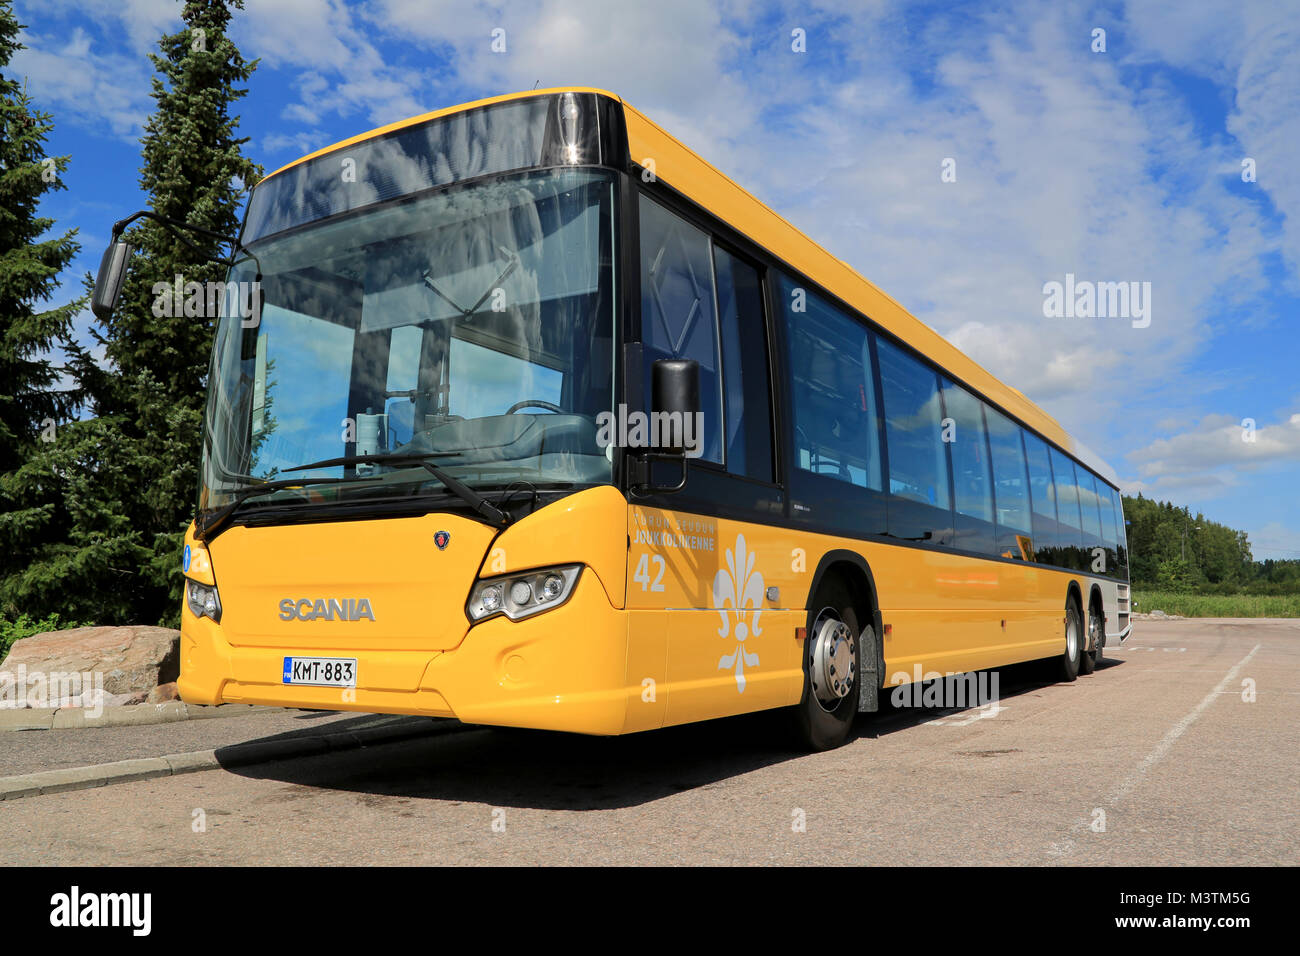 PAIMIO, Finnland - 19 JULI 2014: Gelb Scania in der ganzen Stadt Bus wartet auf Fahrgäste. Scania in der ganzen Stadt ist in niedrig-Boden und Low-entry-Versionen. Stockfoto